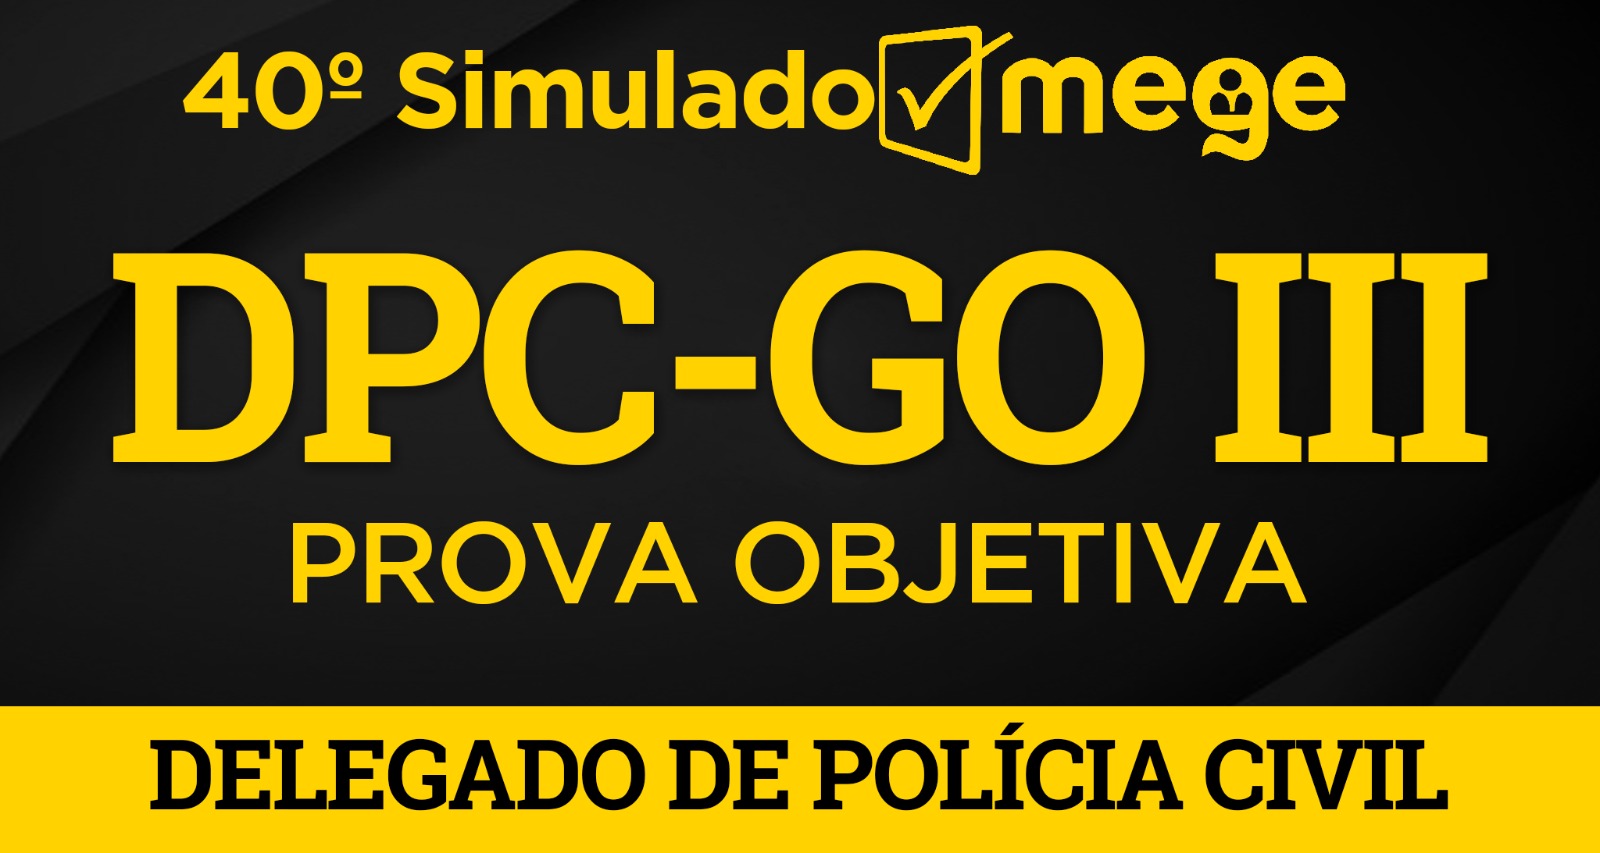 40º Simulado Mege (DPC-GO III)